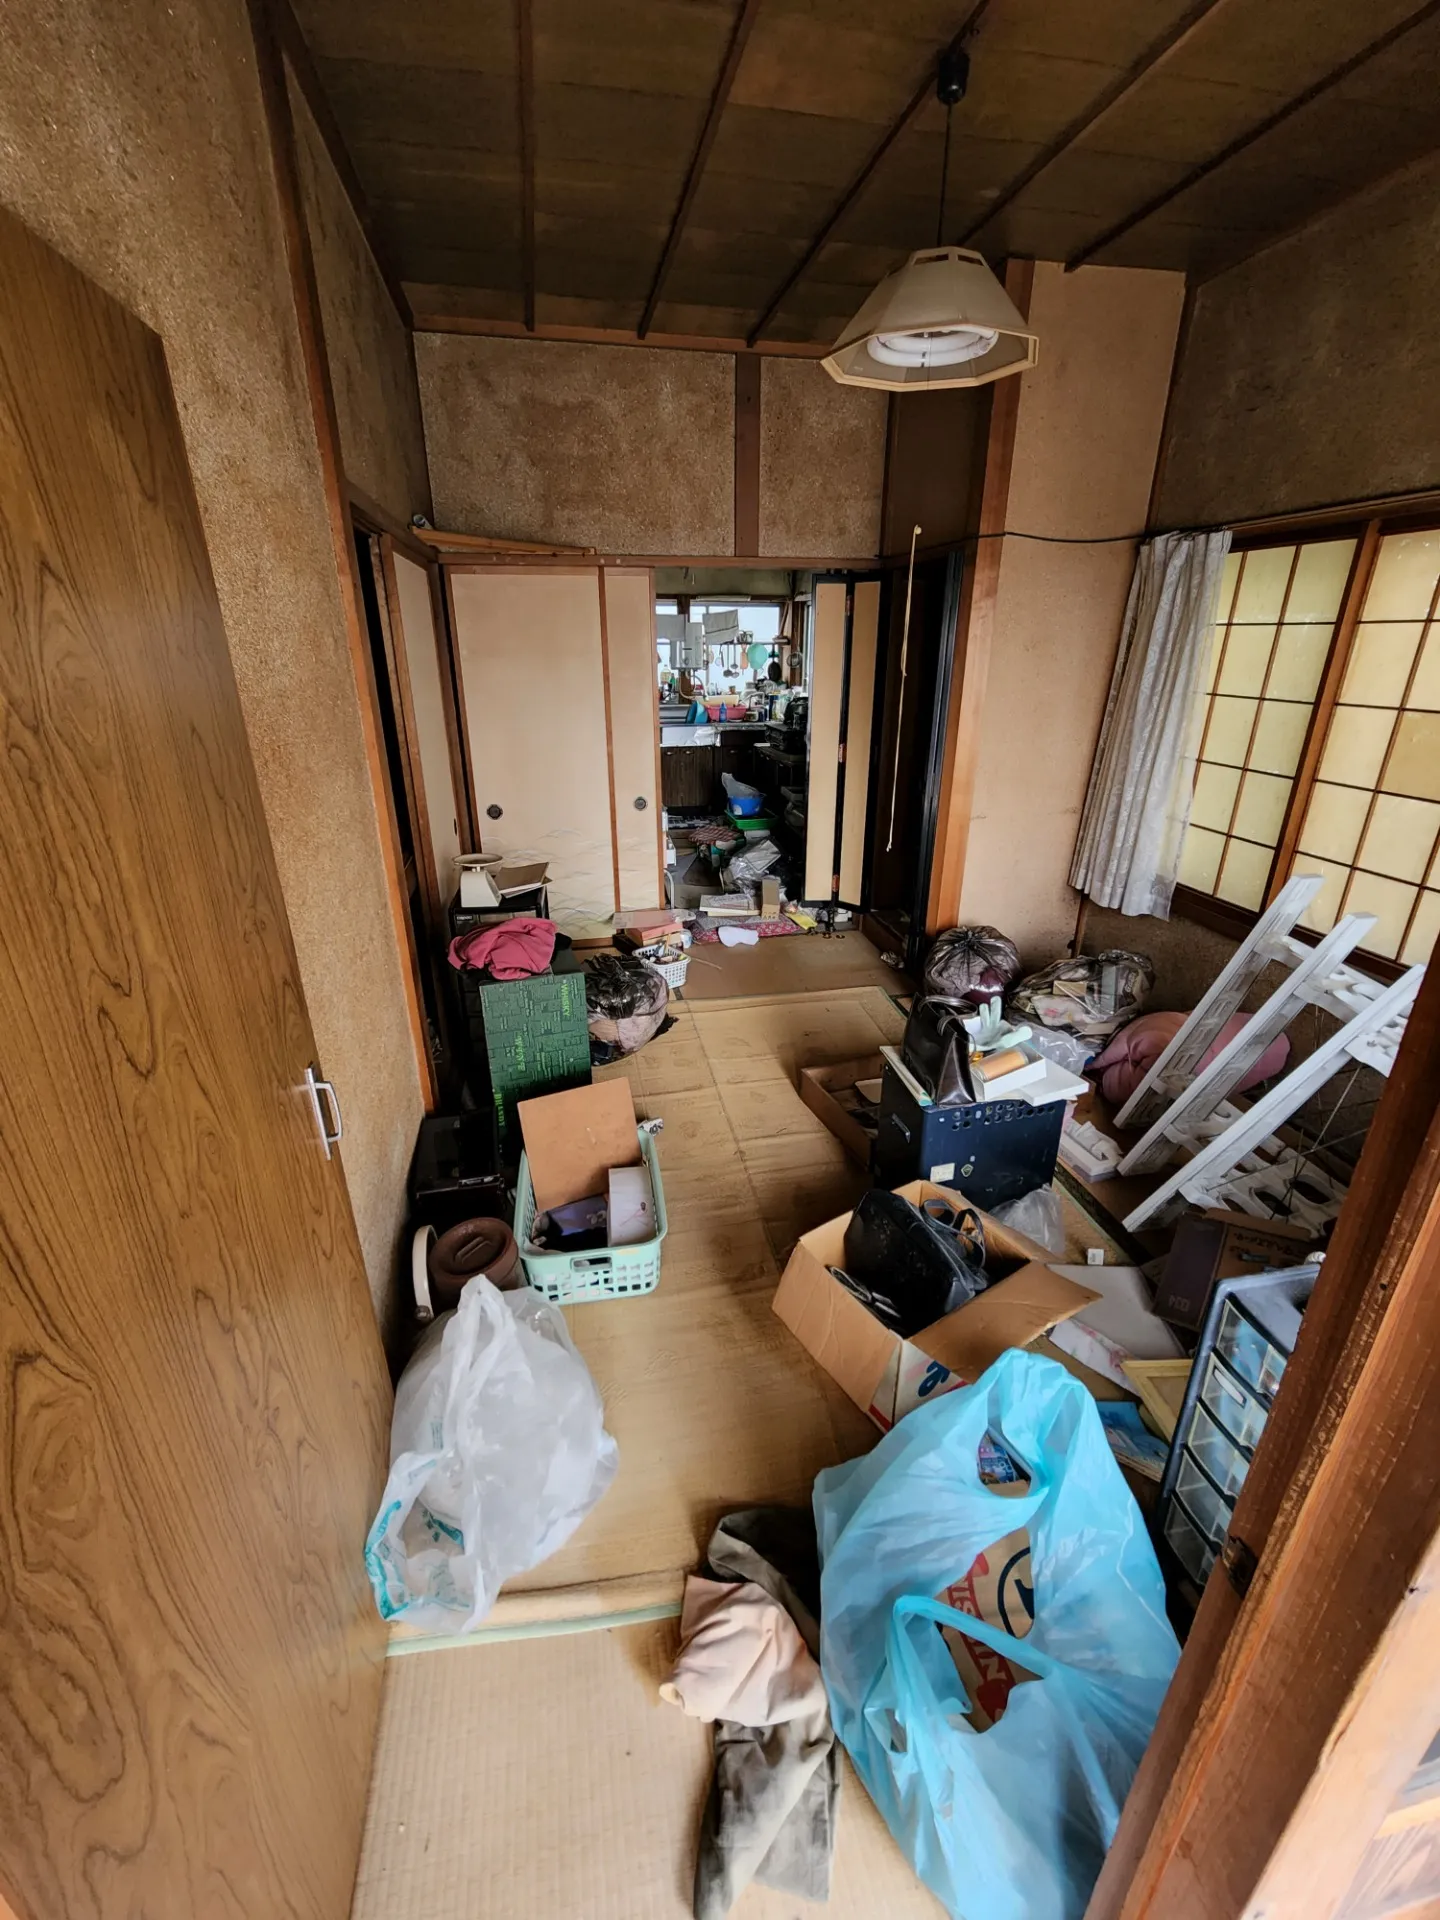 一戸建て<br>富山市今木町の長屋住宅（写真右側）